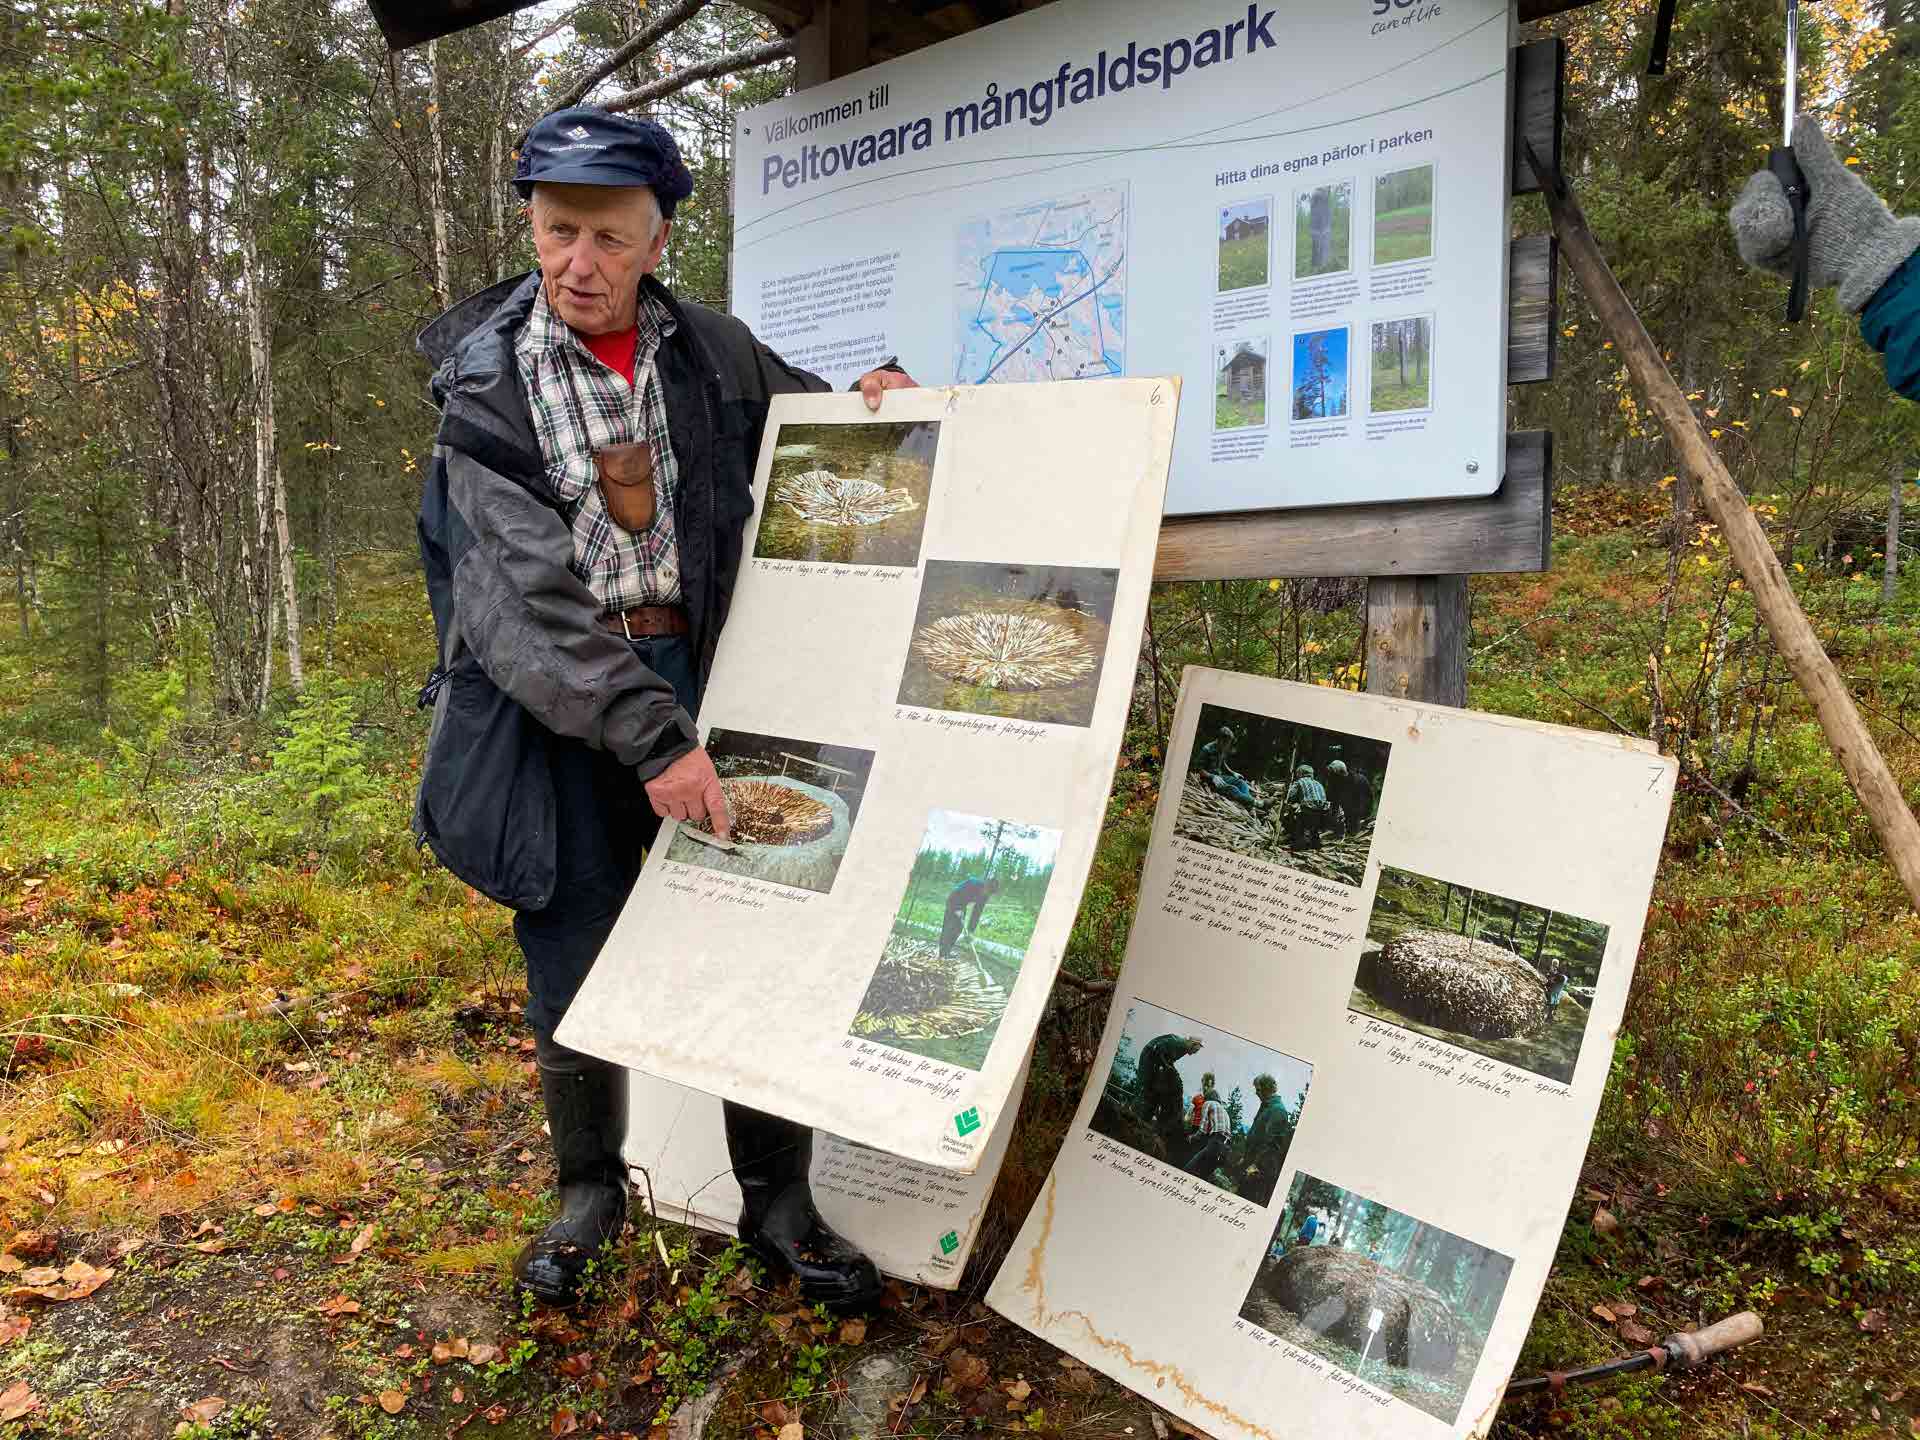 Årsmöte i Nietsak-Peltovaara mångfaldpark 